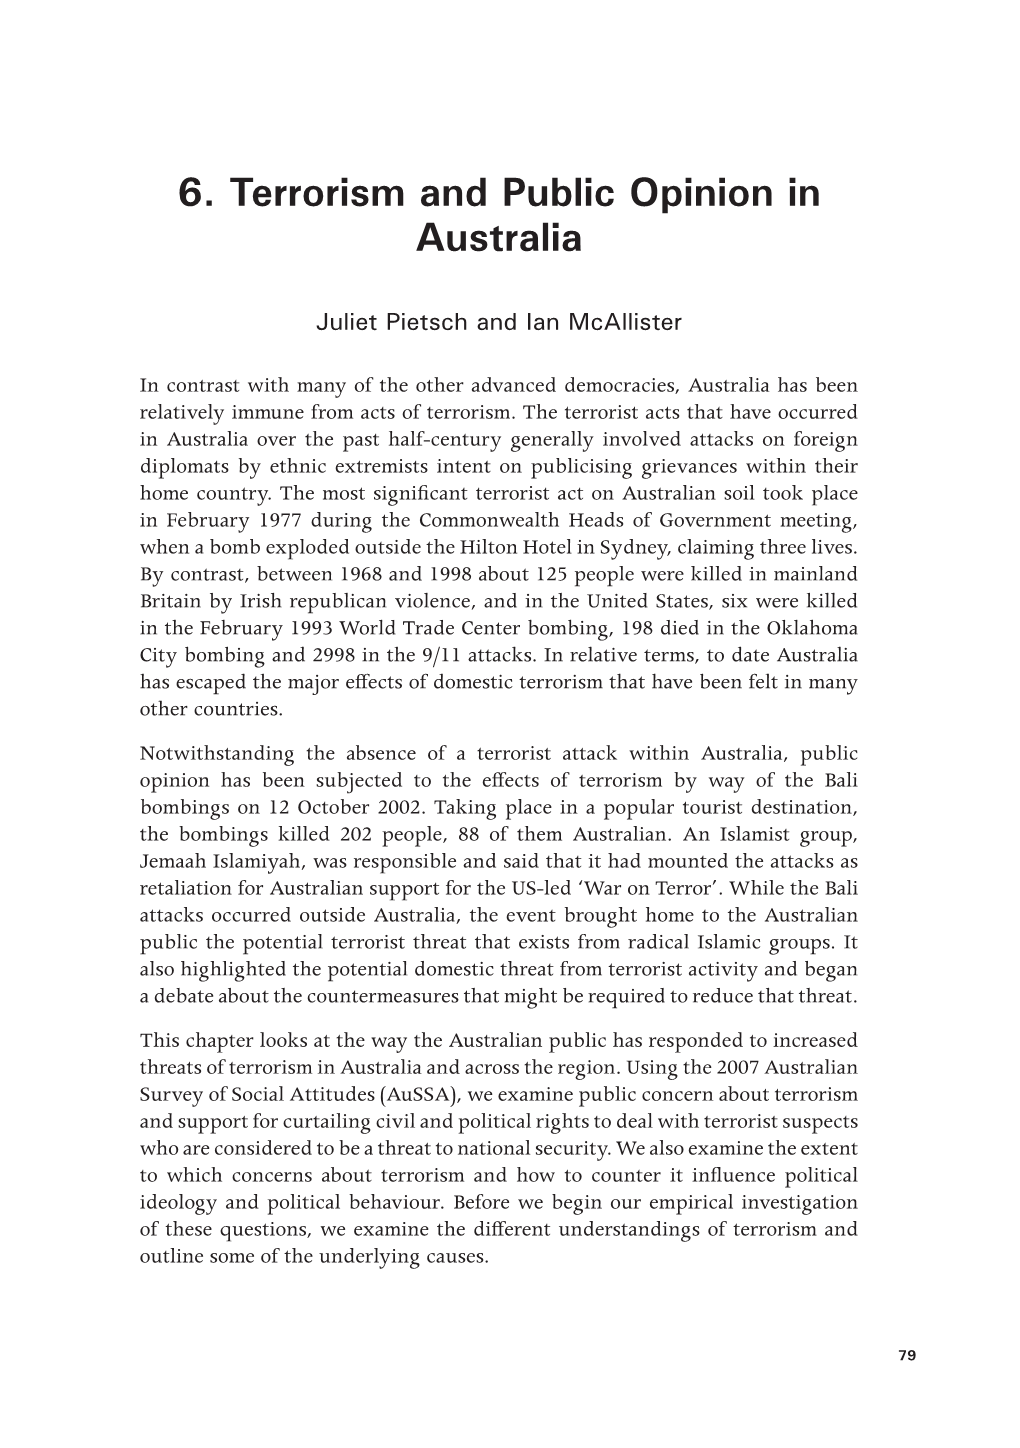 6. Terrorism and Public Opinion in Australia